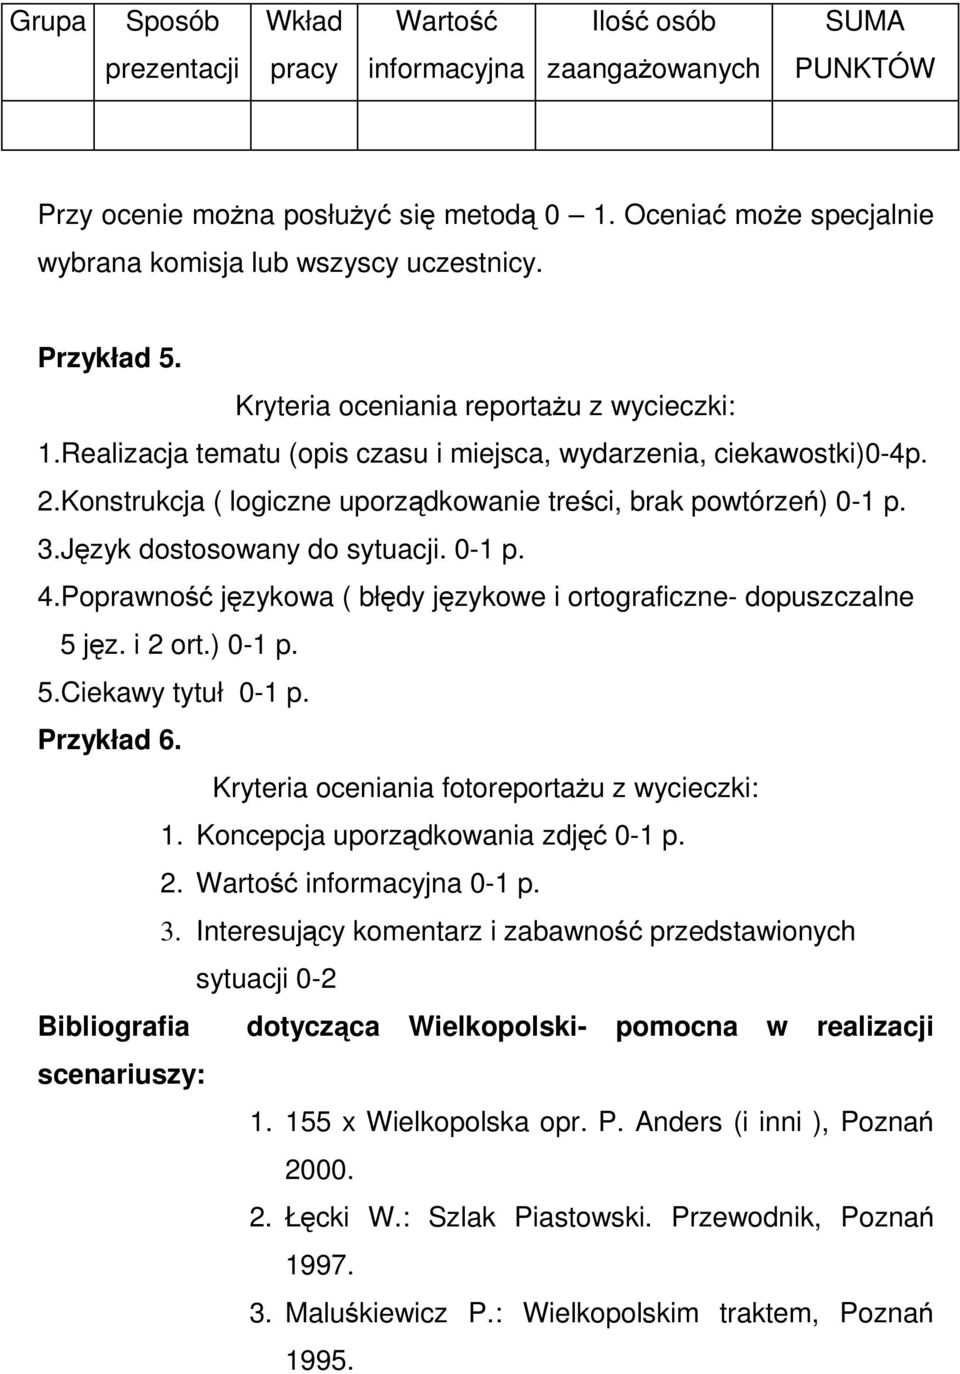 Konstrukcja ( logiczne uporządkowanie treści, brak powtórzeń) 0-1p. 3.Język dostosowany do sytuacji. 0-1 p. 4.Poprawność językowa ( błędy językowe i ortograficzne- dopuszczalne 5jęz. i 2 ort.) 0-1 p.